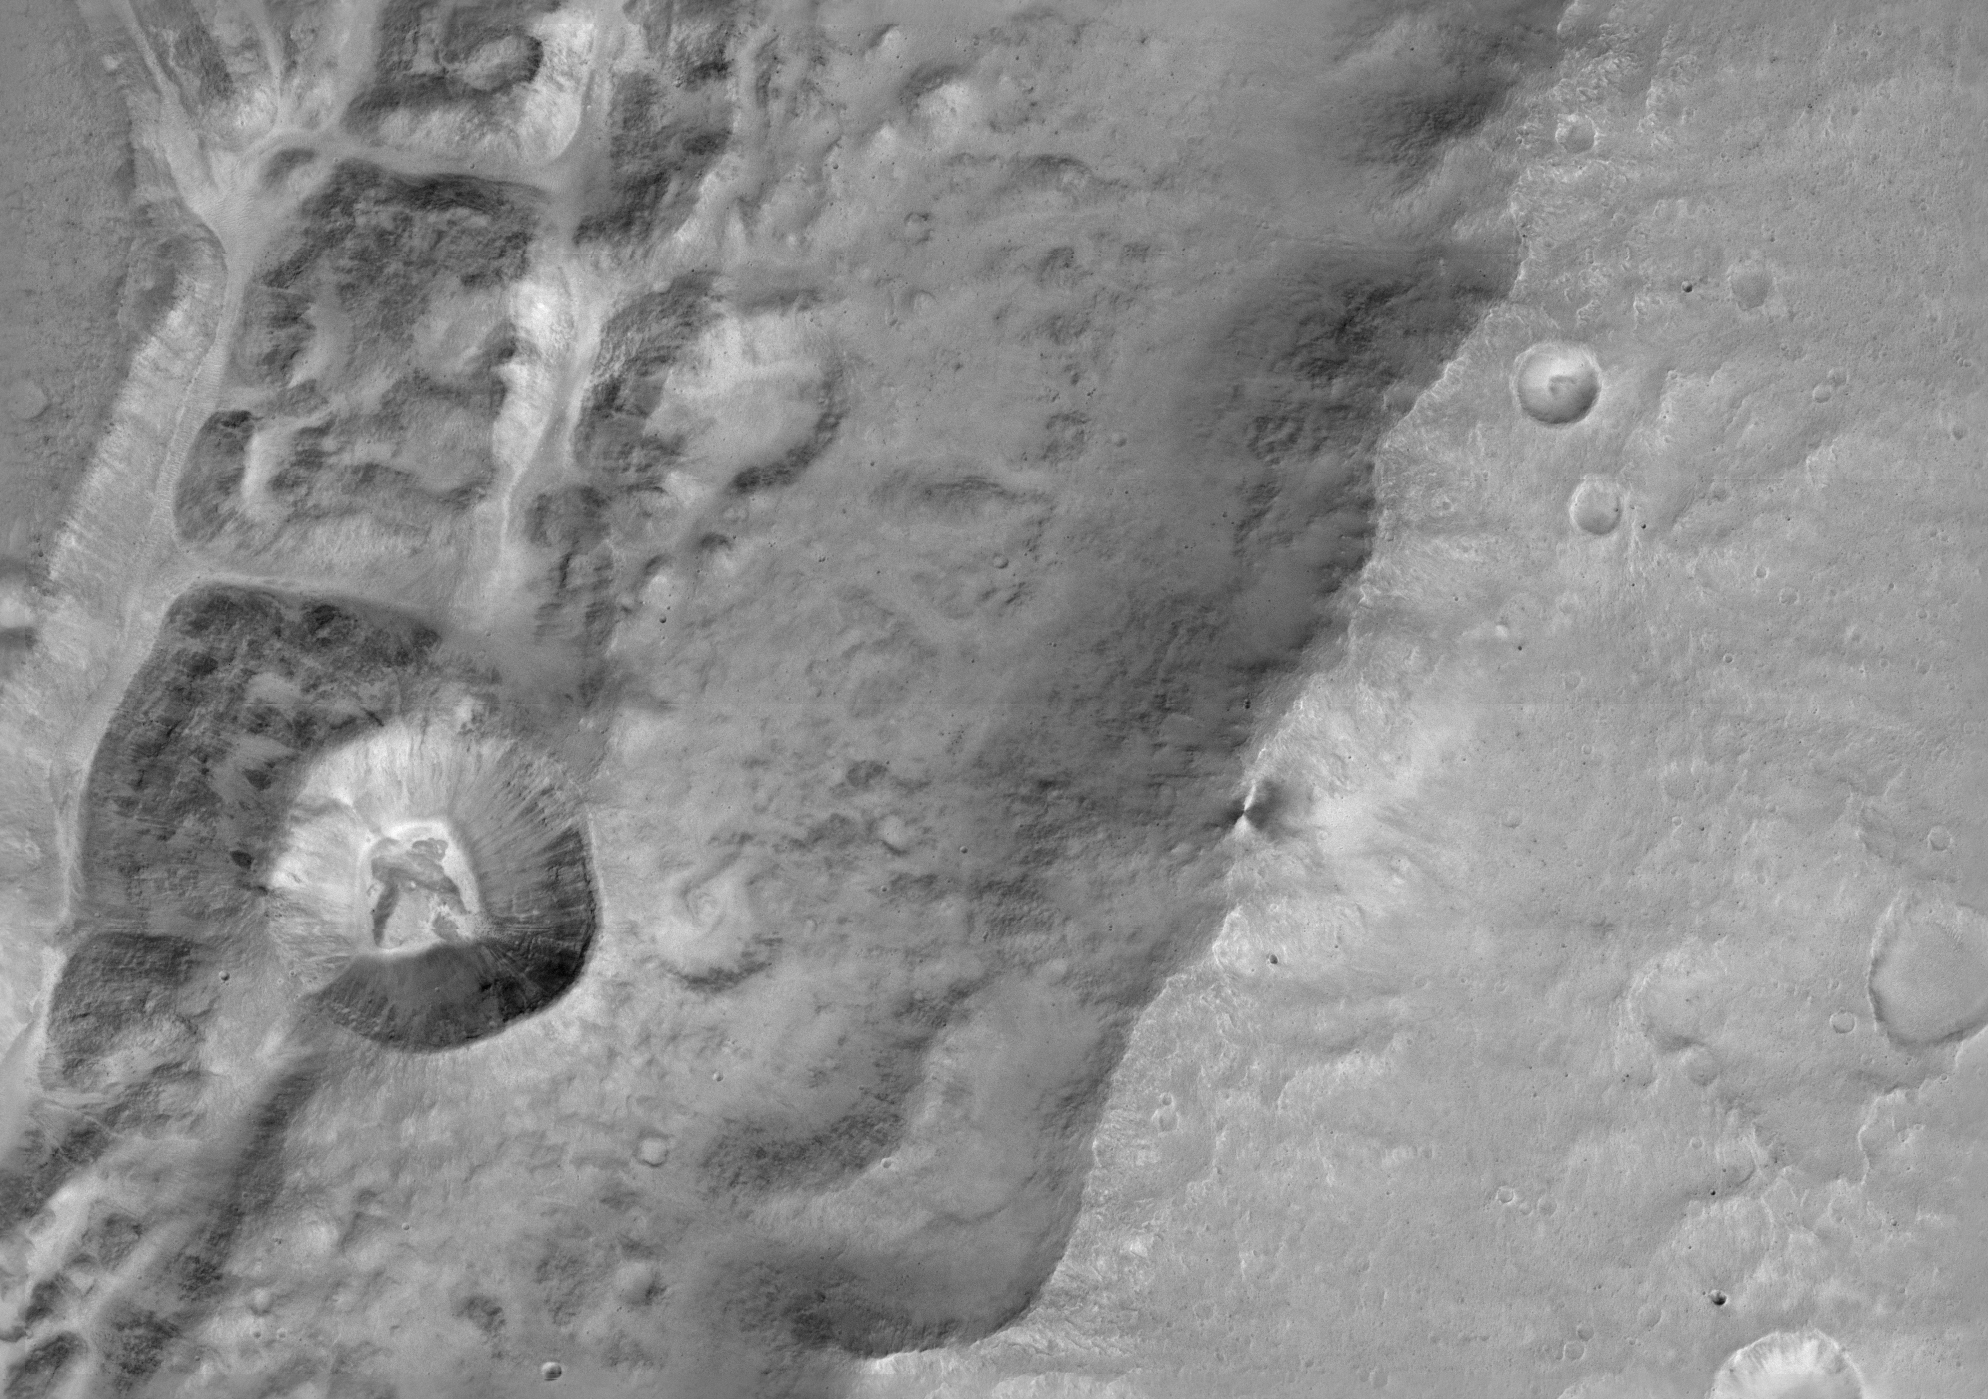 Kamera CaSSIS przeszła fazę testów i przesłała na Ziemię pierwsze zdjęcia Marsa